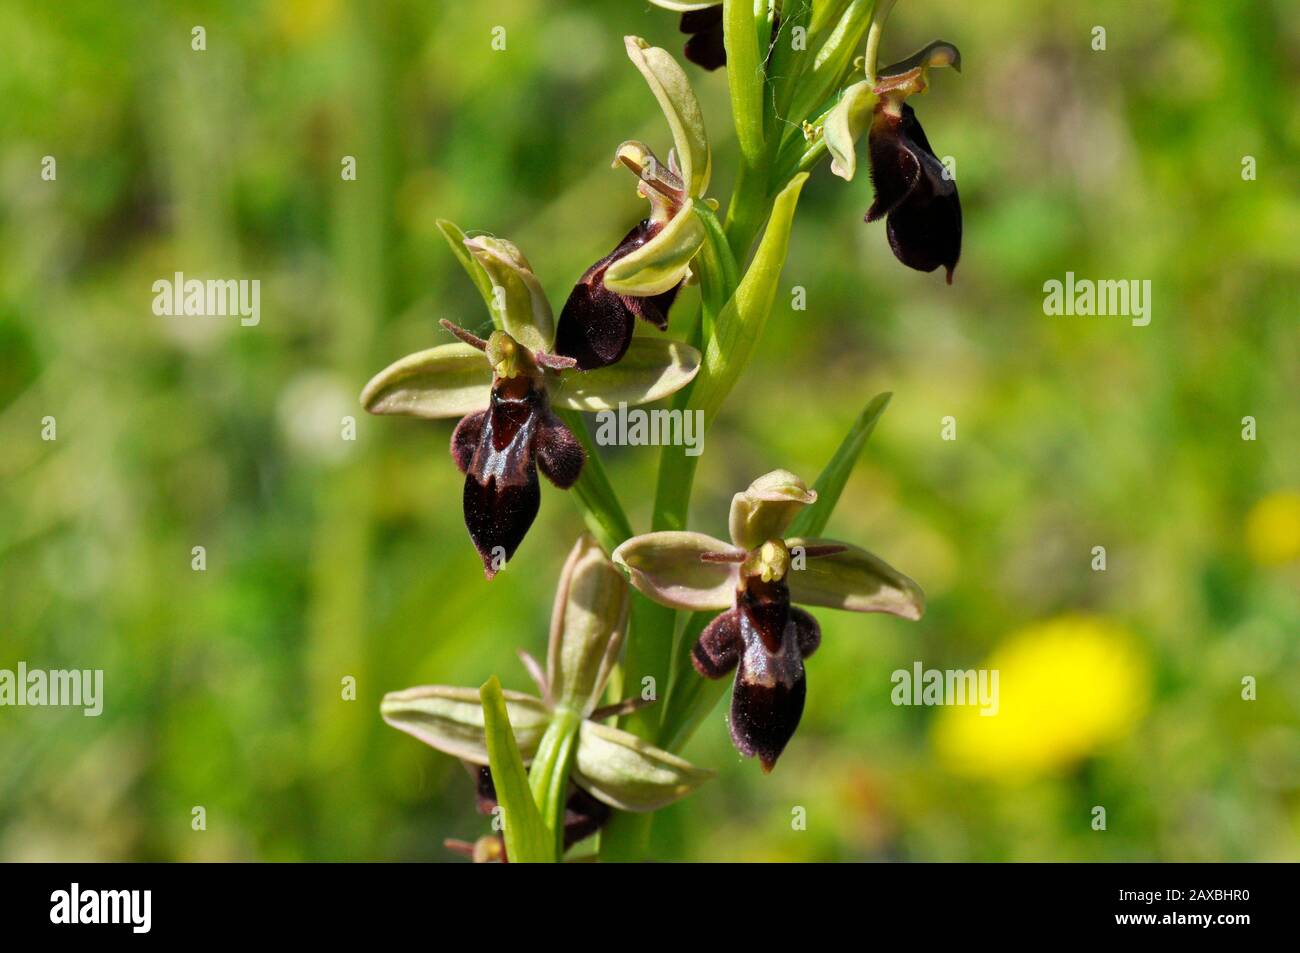 Bee Fly Hybrid Orchid, piccolo orso come l'apparenza,calcio ricco suolo, fiori giugno, Foto Stock